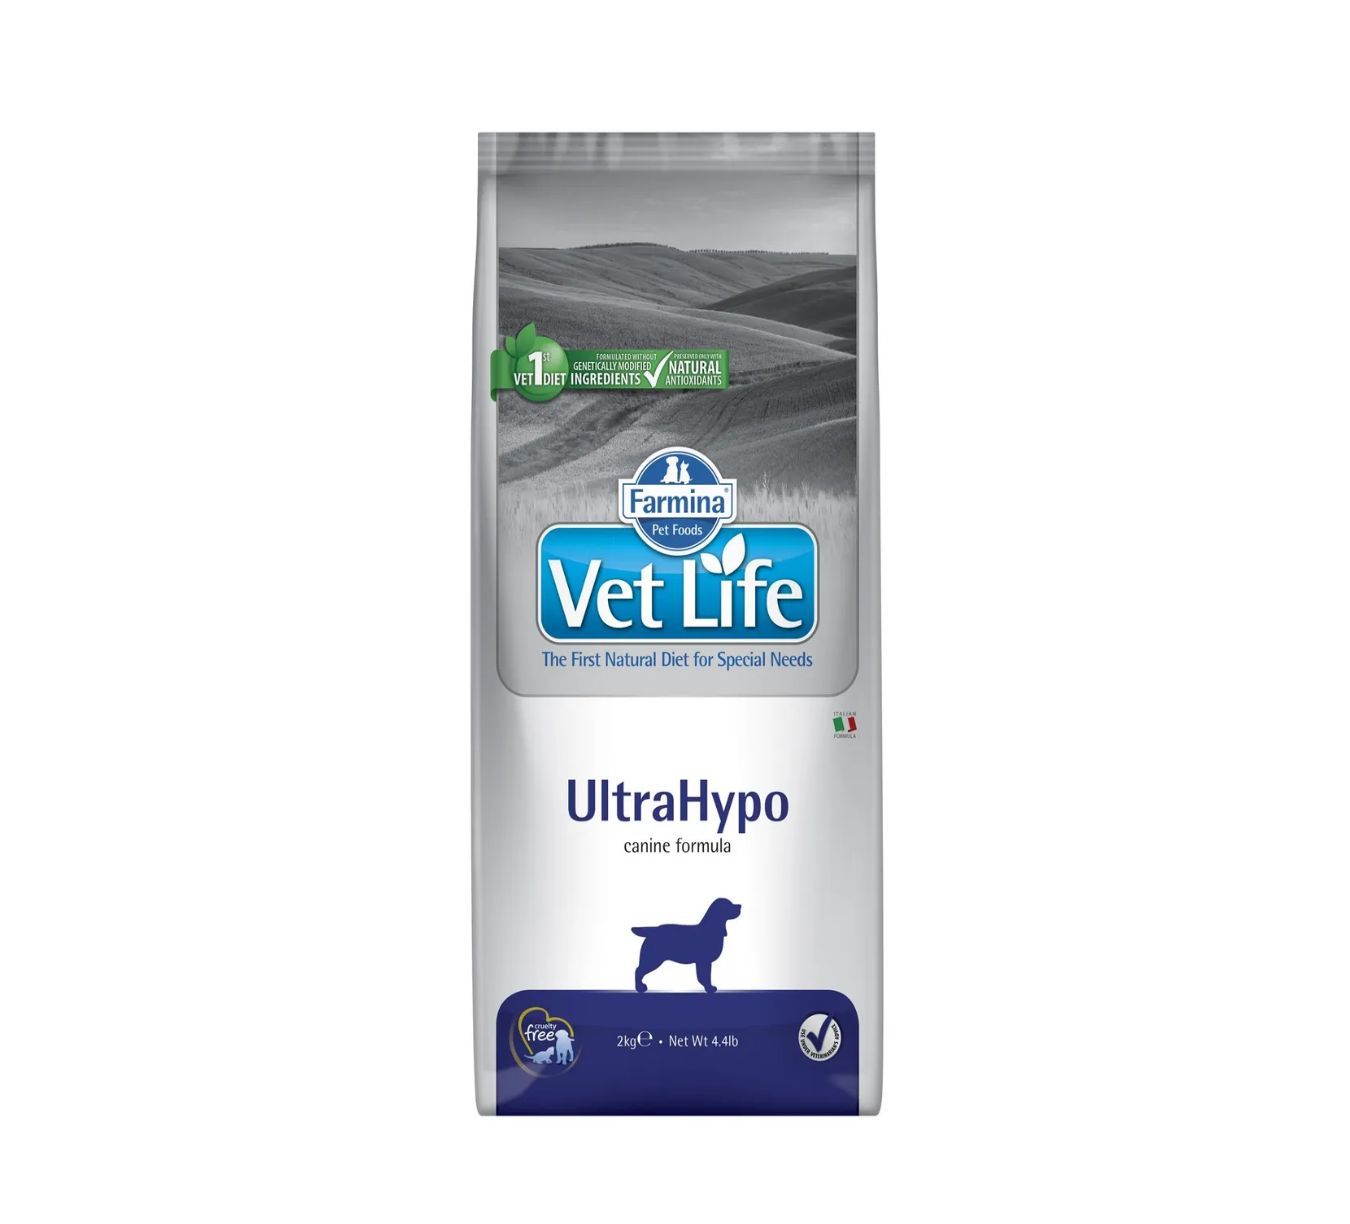 Корм vet life ultrahypo. Корм для собак vet Life ULTRAHYPO. Farmina ULTRAHYPO для собак. Вит лайф для собак гипоаллергенный ультрагипо. Корм для собак VETLIFE ULTRAHYPO 2 кг как выглядит внутри.